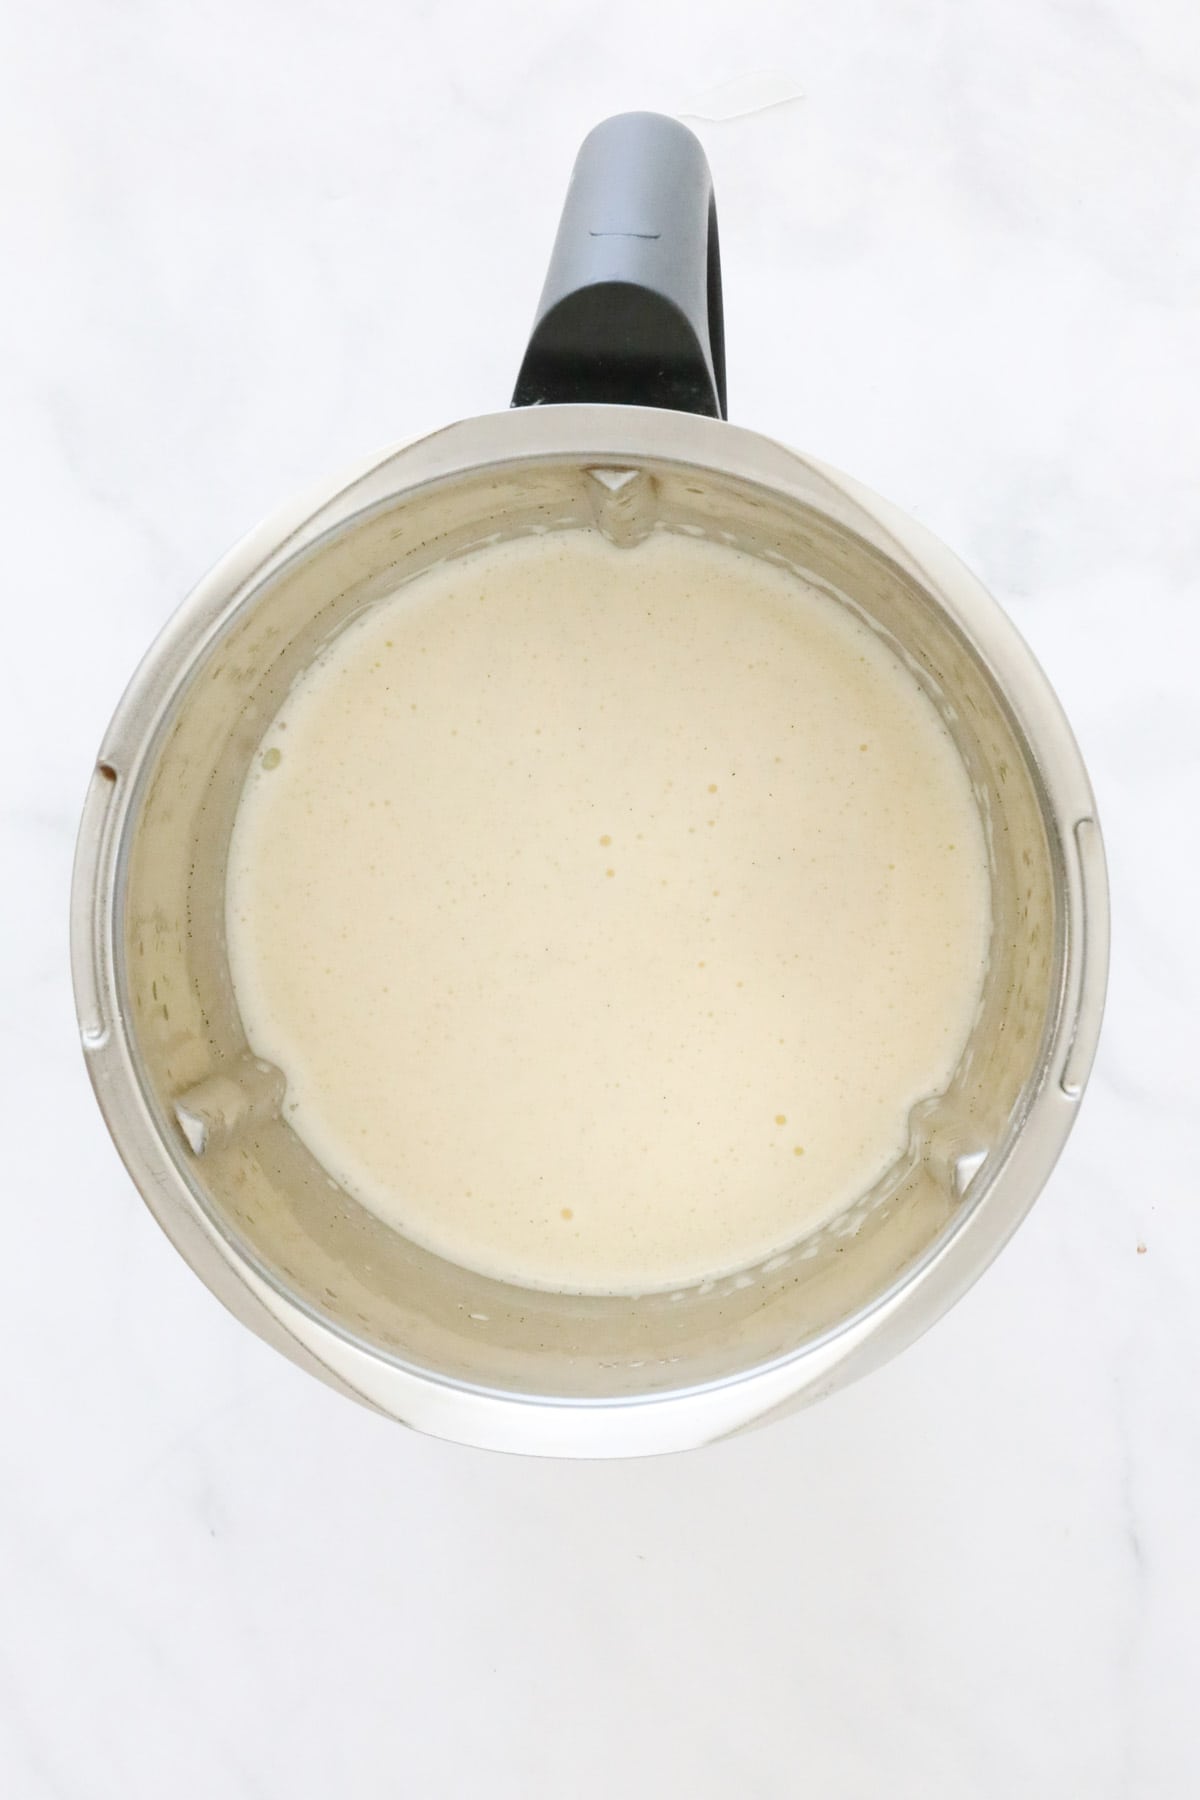 Creamy vanilla bean liquid in a Thermomix.